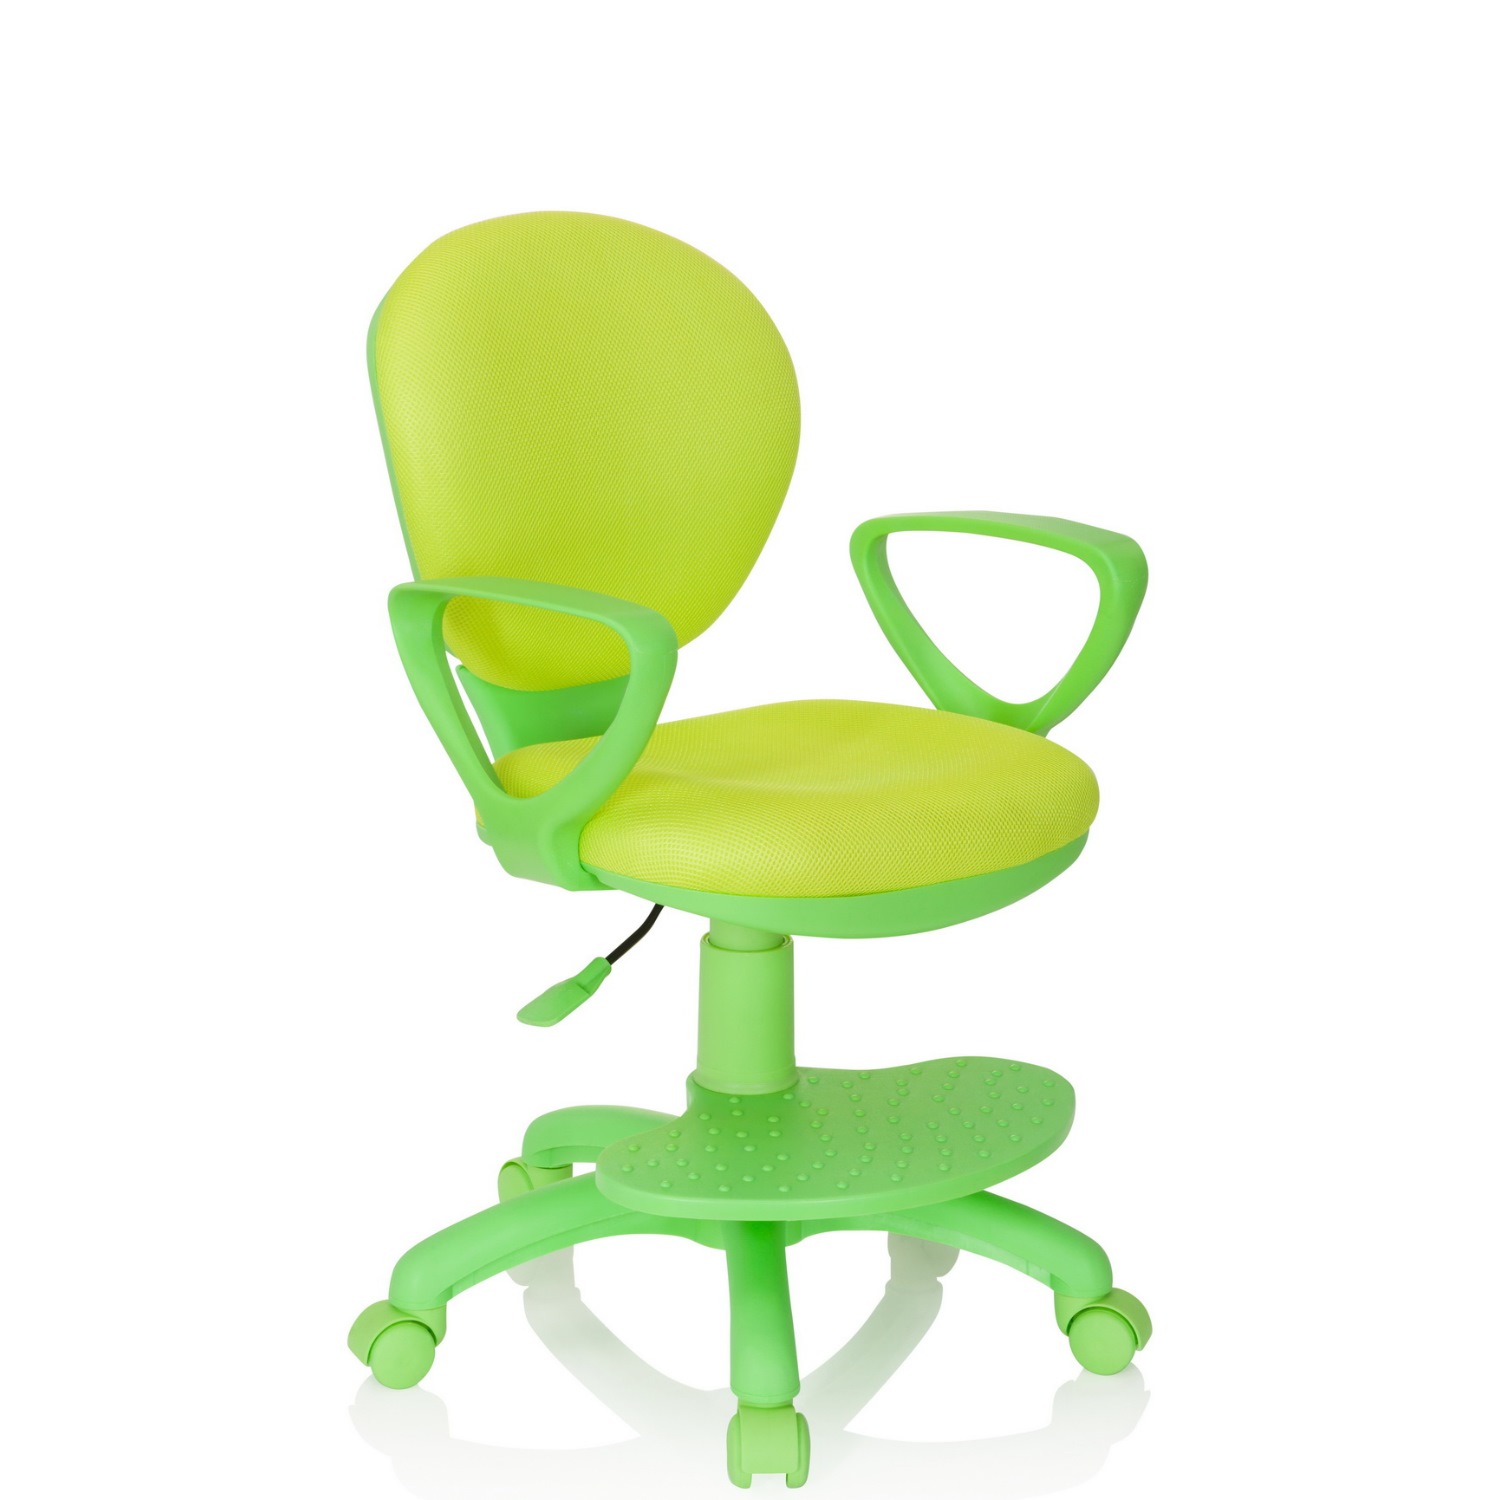 grün Büromöbel Schreibtischstuhl - schnell PARADIGM und Stoff Kinderstuhl Büroland / preiswert